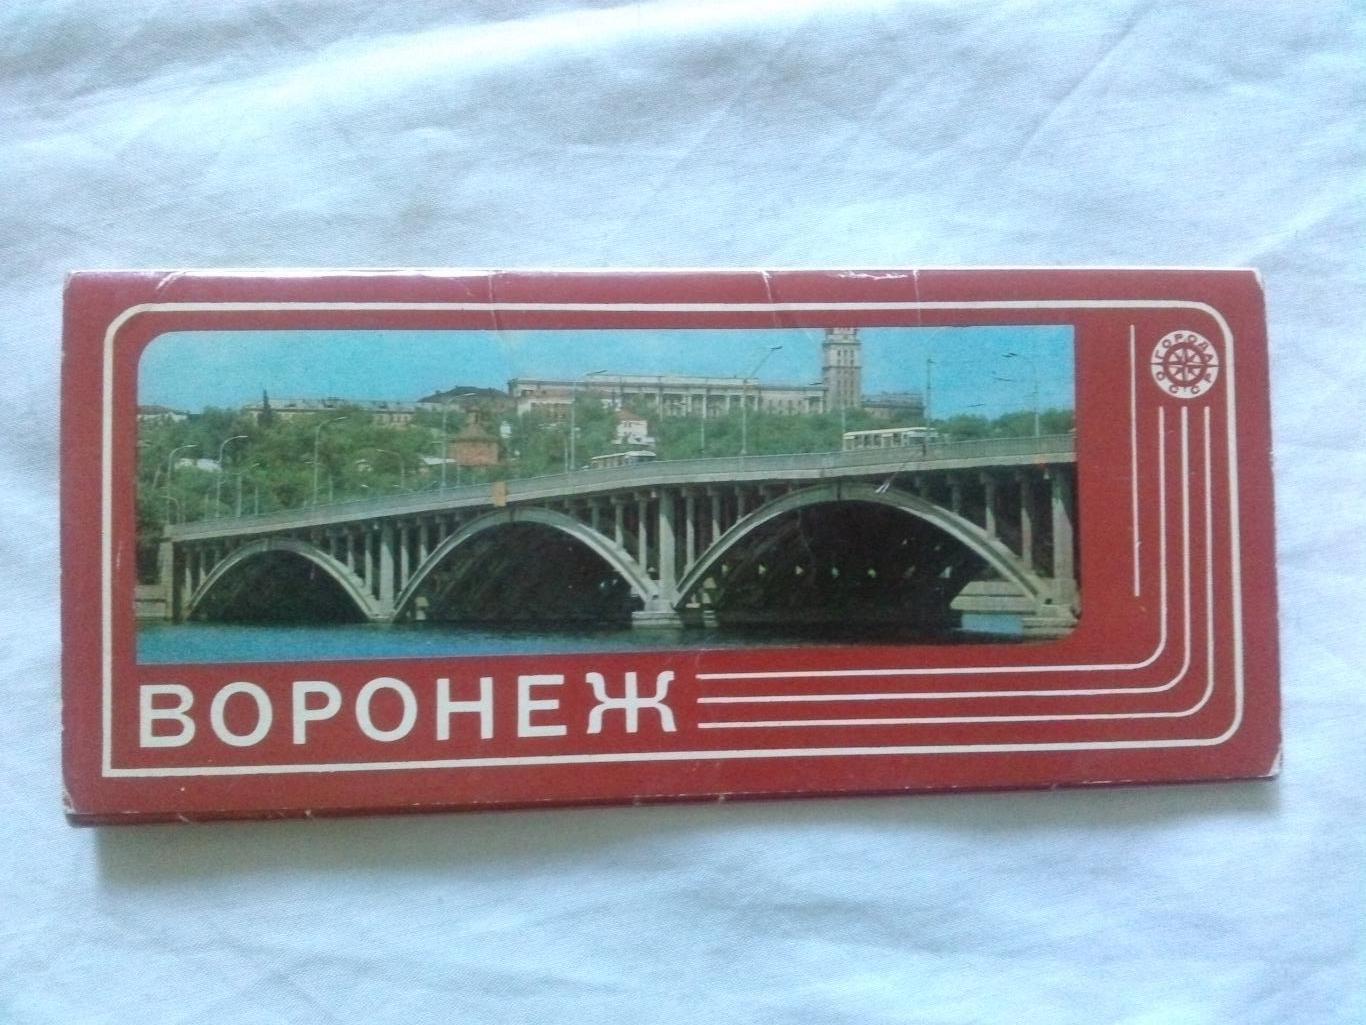 Города СССР : Воронеж 1980 г. полный набор - 15 открыток (чистые , в идеале)